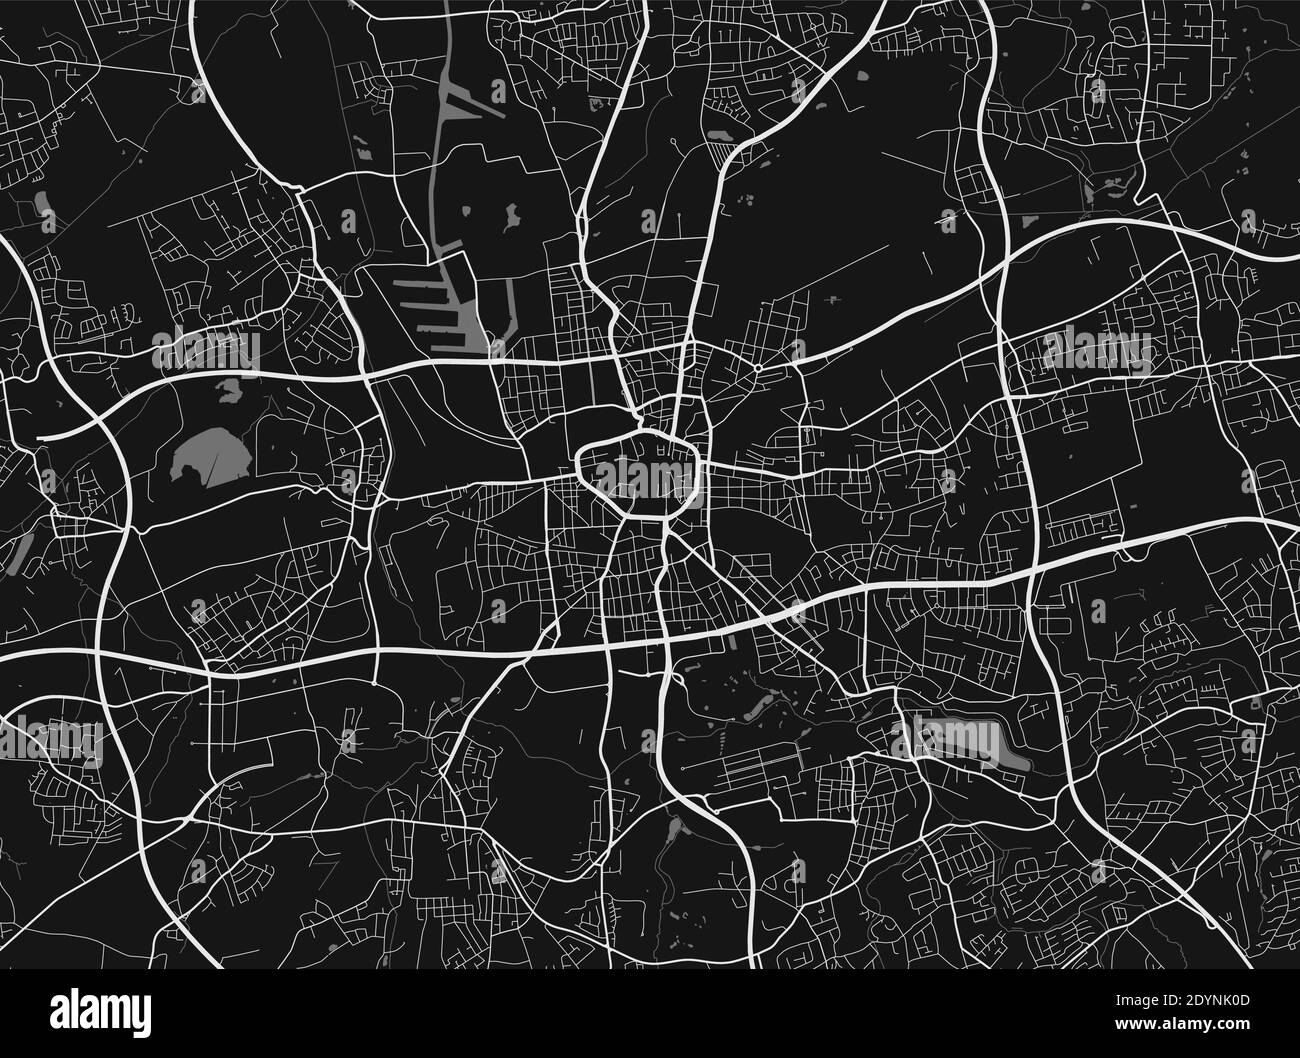 Plan de la ville urbaine de Dortmund. Illustration vectorielle, poster d'art de Dortmund. Illustration de Vecteur